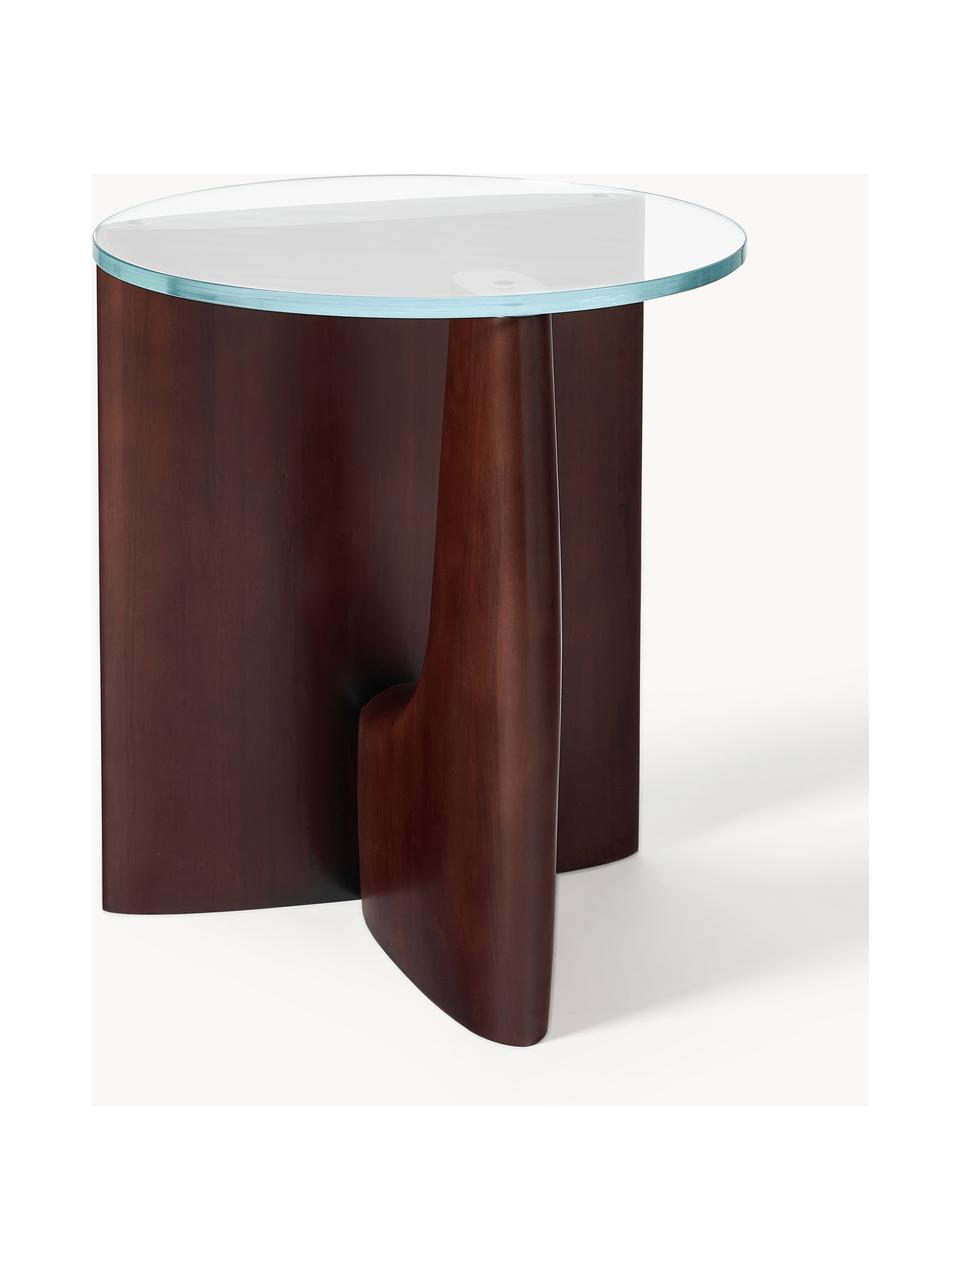 Table d'appoint ronde en bois avec plateau en verre Miya, Bois de peuplier, brun foncé laqué, transparent, Ø 53 cm, haut. 55 cm